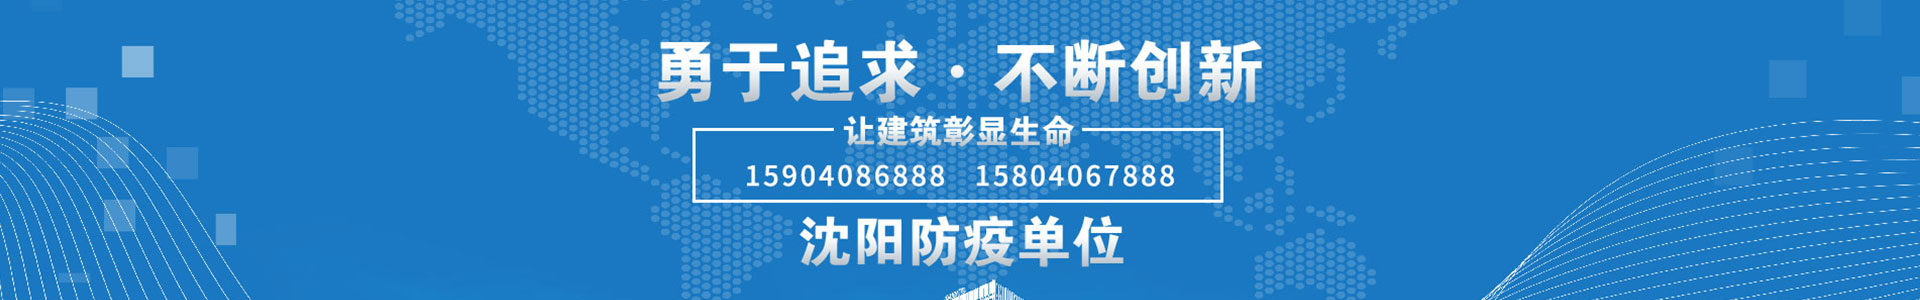 皇冠官方APP(中国)有限公司官网